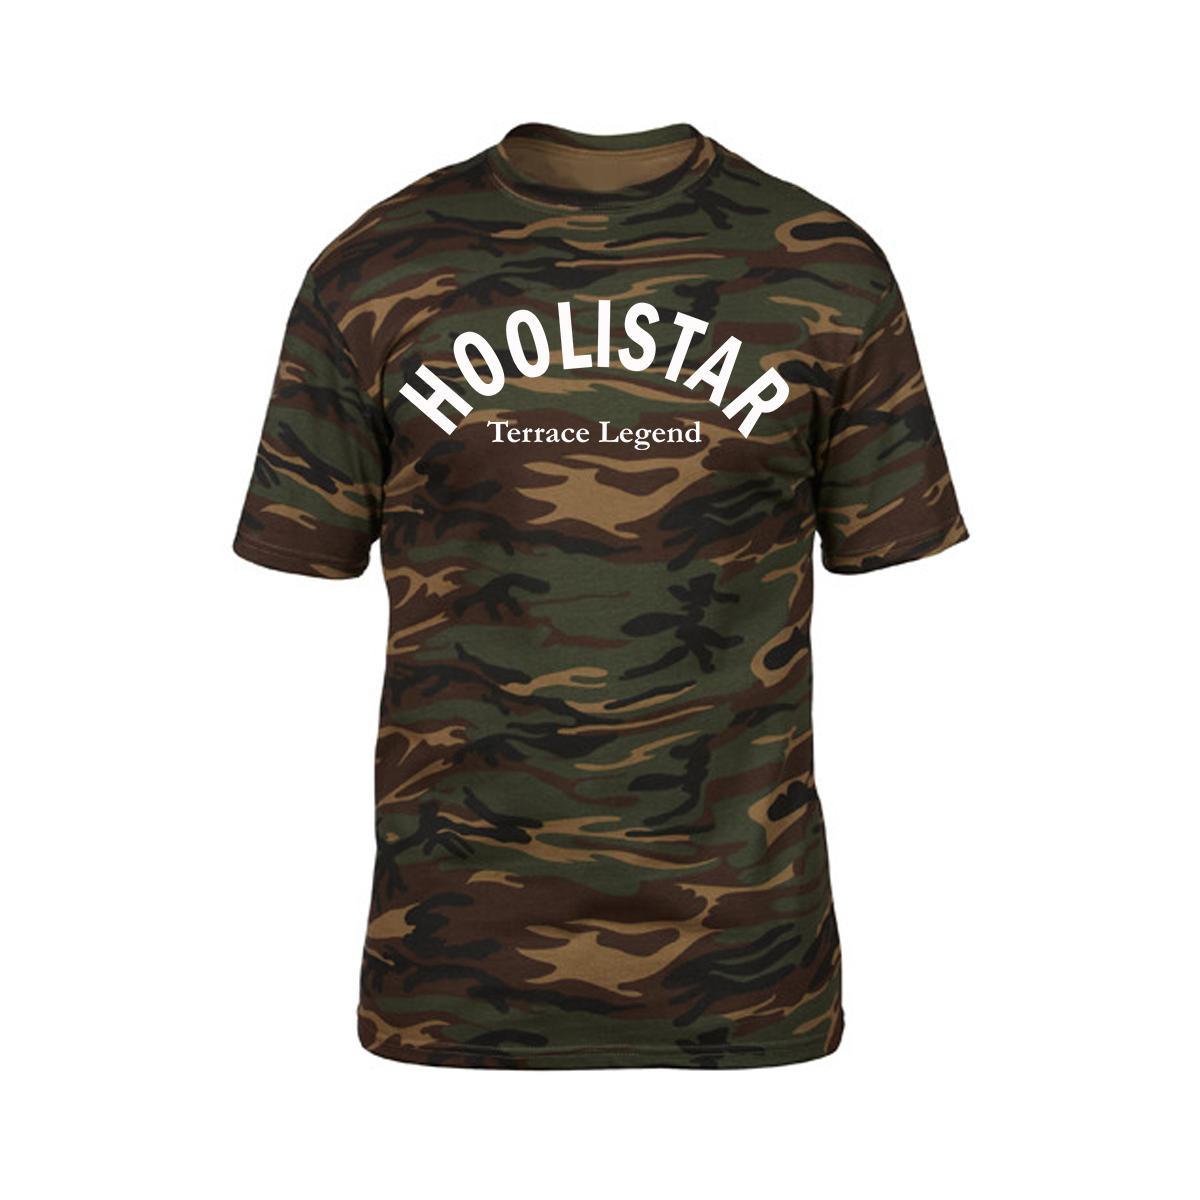 Hoolistar Terrace Legend - Männer T-Shirt - woodland